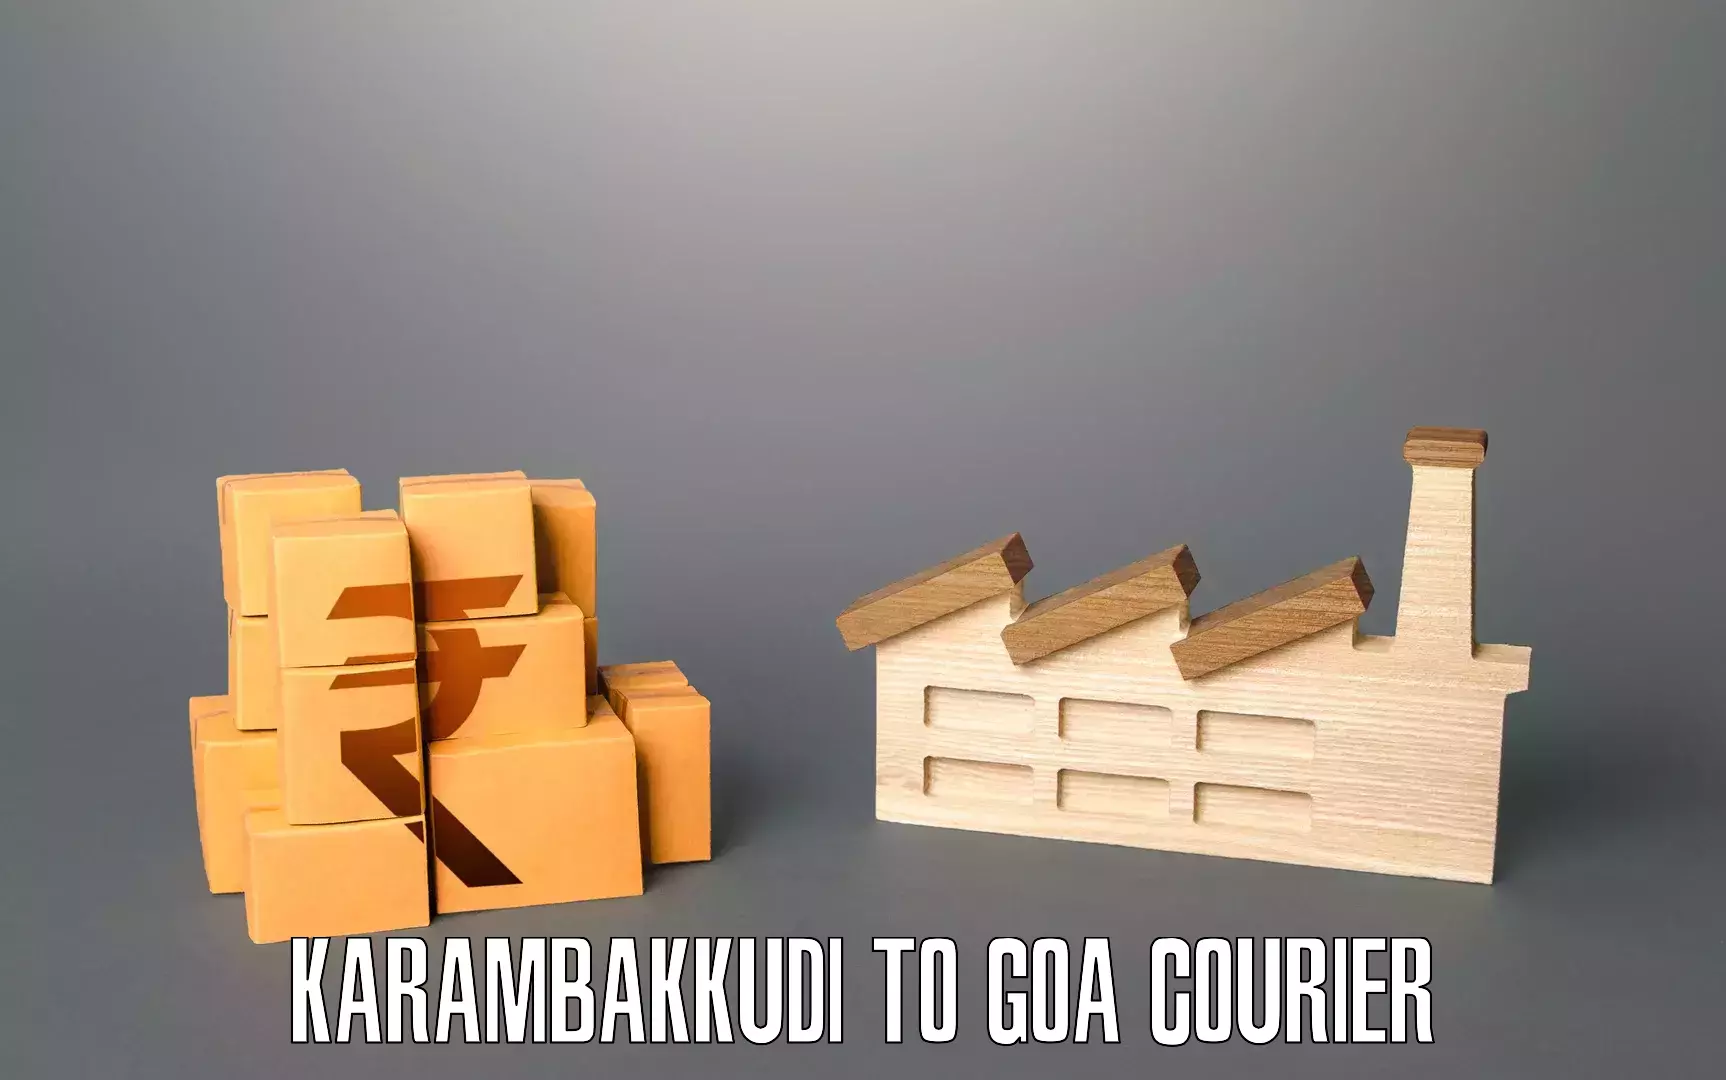 Door-to-door relocation services in Karambakkudi to NIT Goa